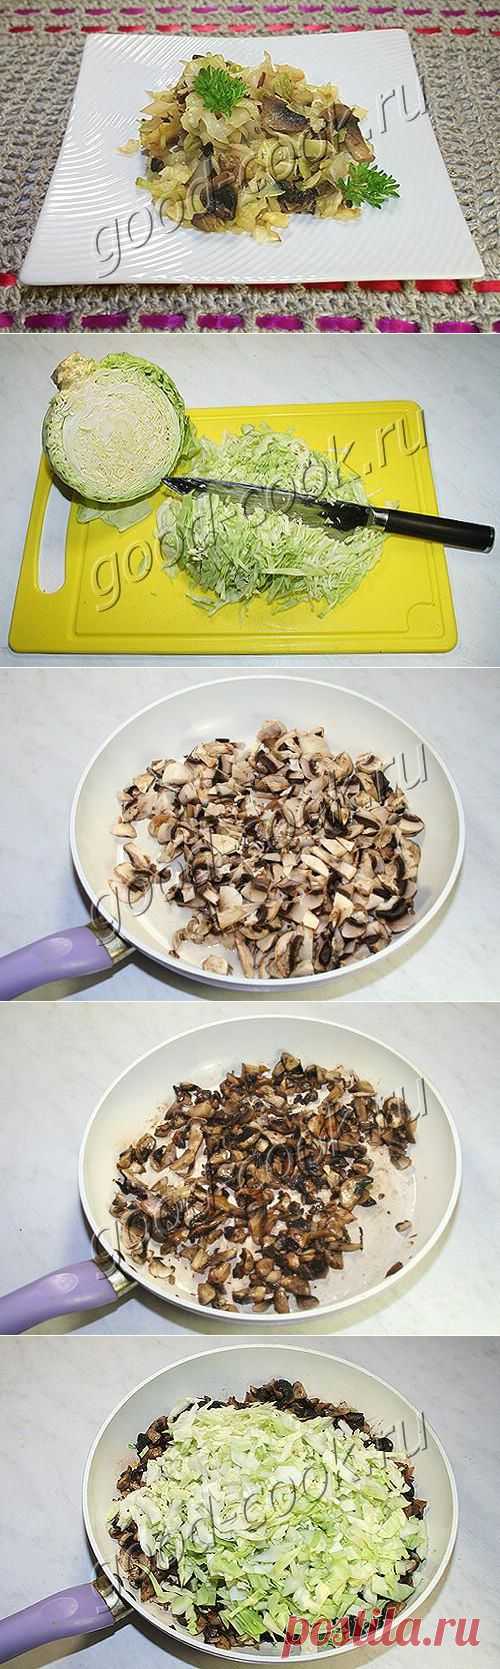 Хорошая кухня - капуста тушеная с грибами. Кулинарная книга рецептов. Салаты, выпечка.